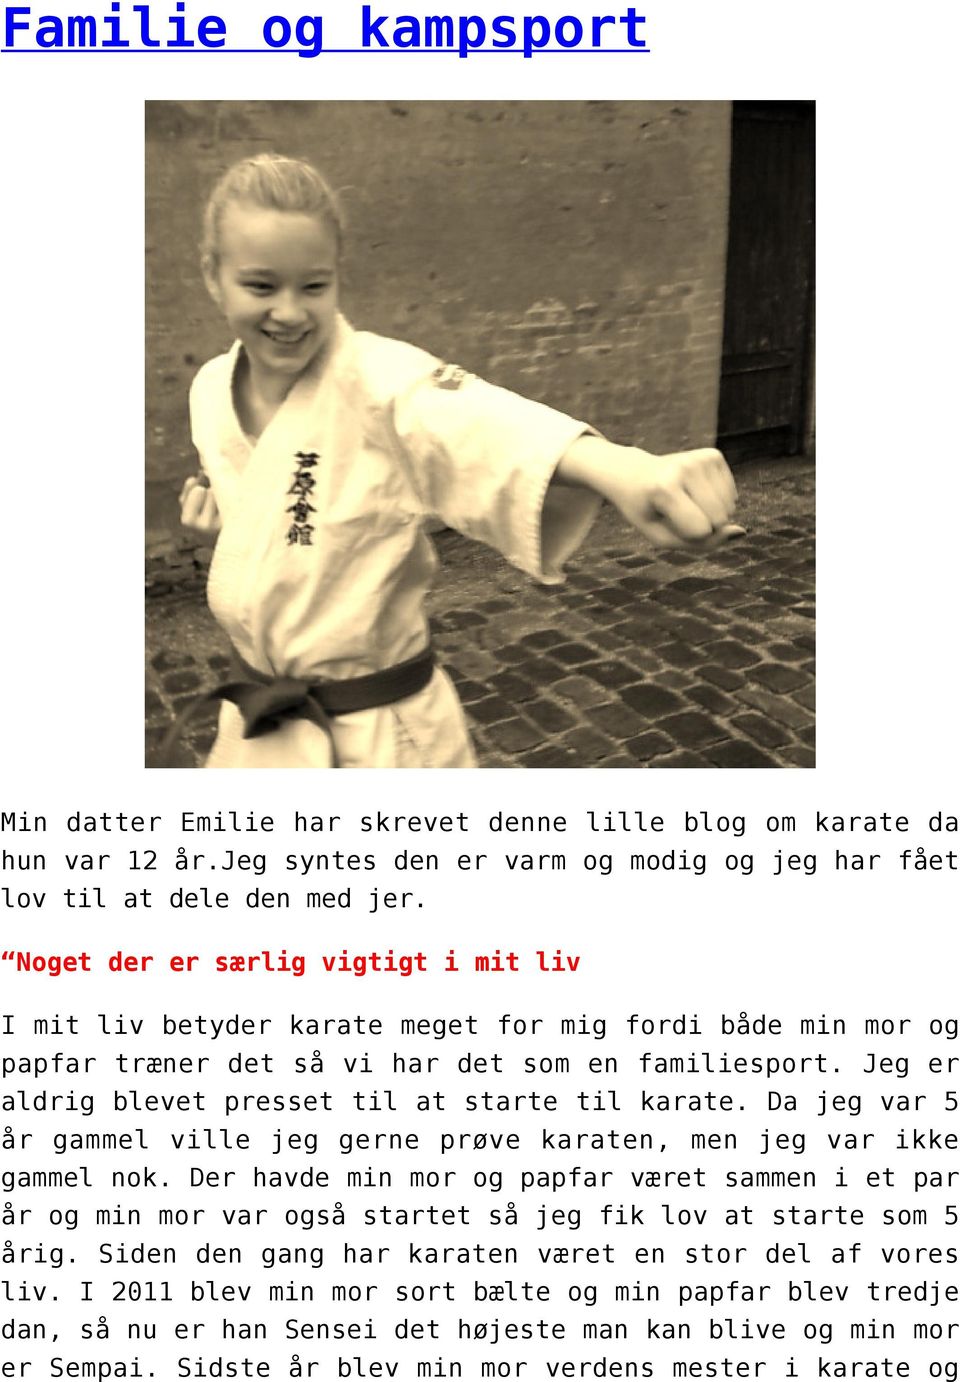 Jeg er aldrig blevet presset til at starte til karate. Da jeg var 5 år gammel ville jeg gerne prøve karaten, men jeg var ikke gammel nok.